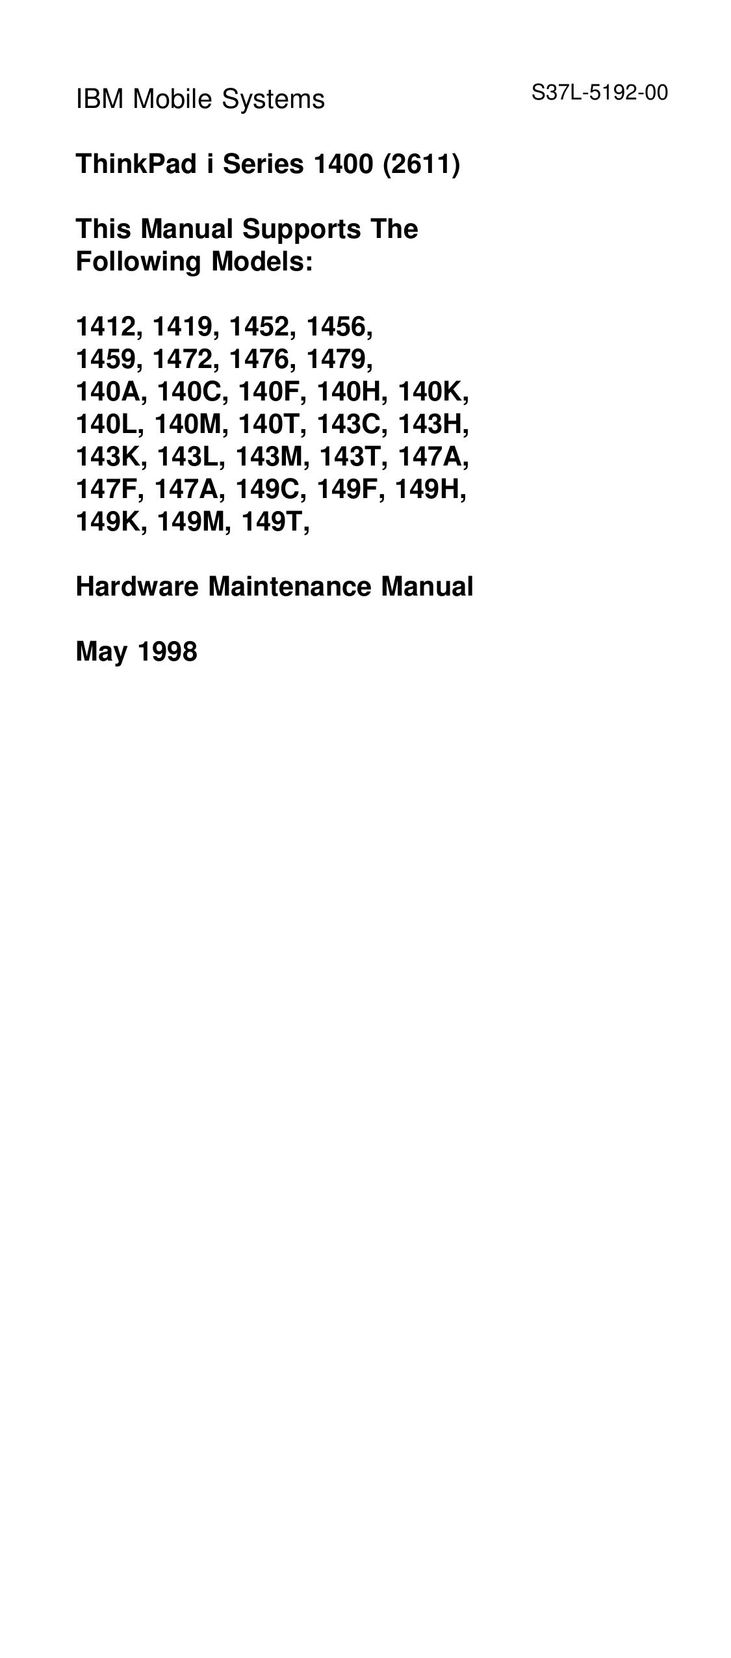 IBM 1419 Laptop User Manual